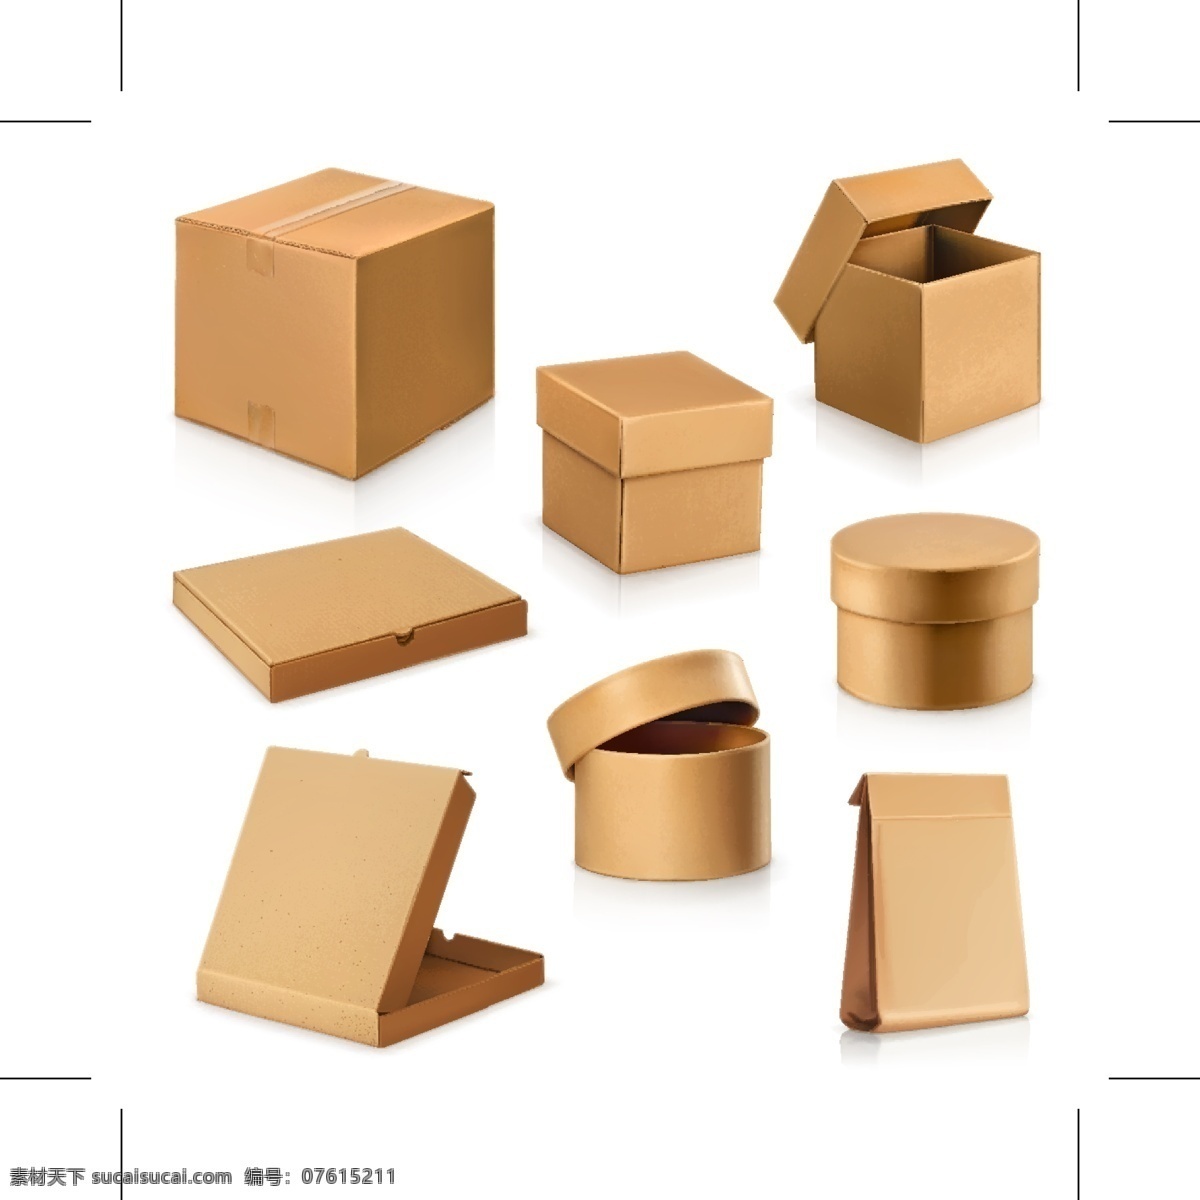 空白包装盒 牛皮纸盒 包装盒模板 包装盒 包装纸盒 包装 纸盒 盒子 包装盒效果图 包装设计